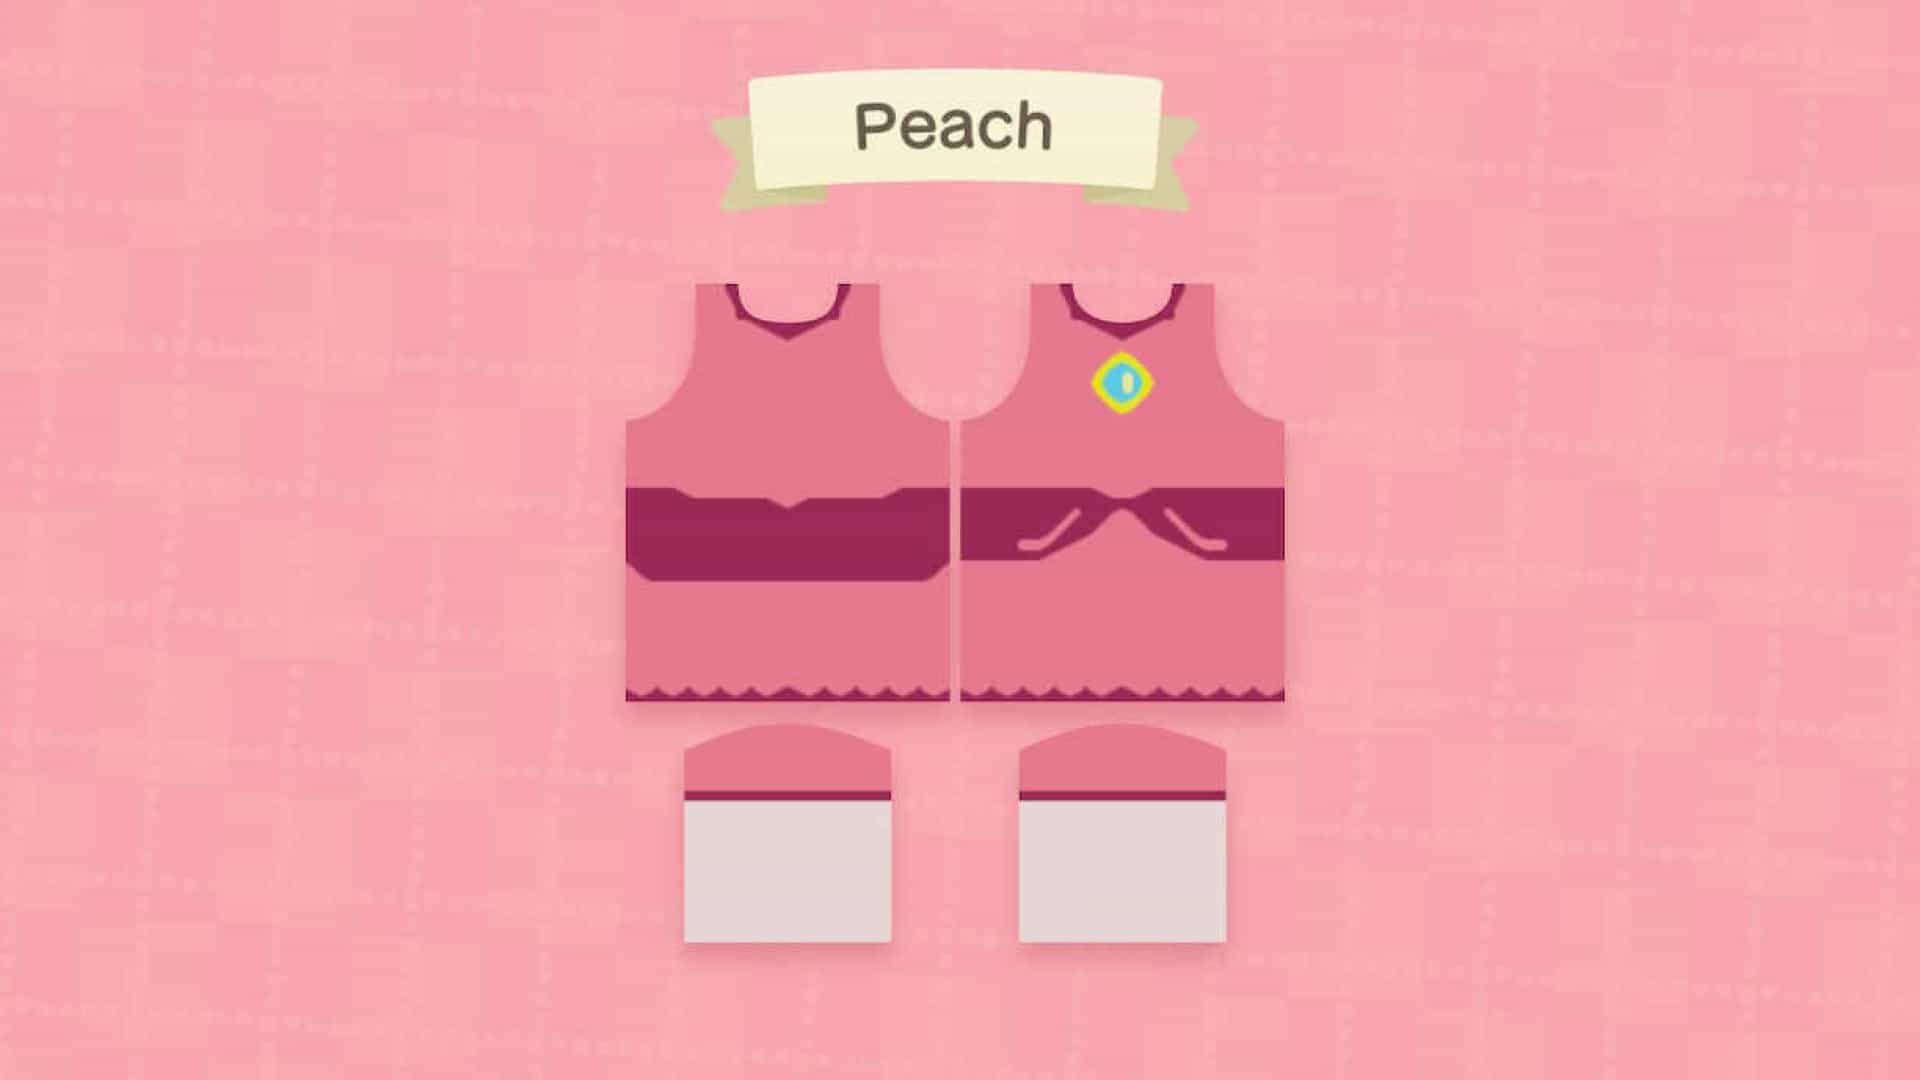 Diseño del vestido de Peach